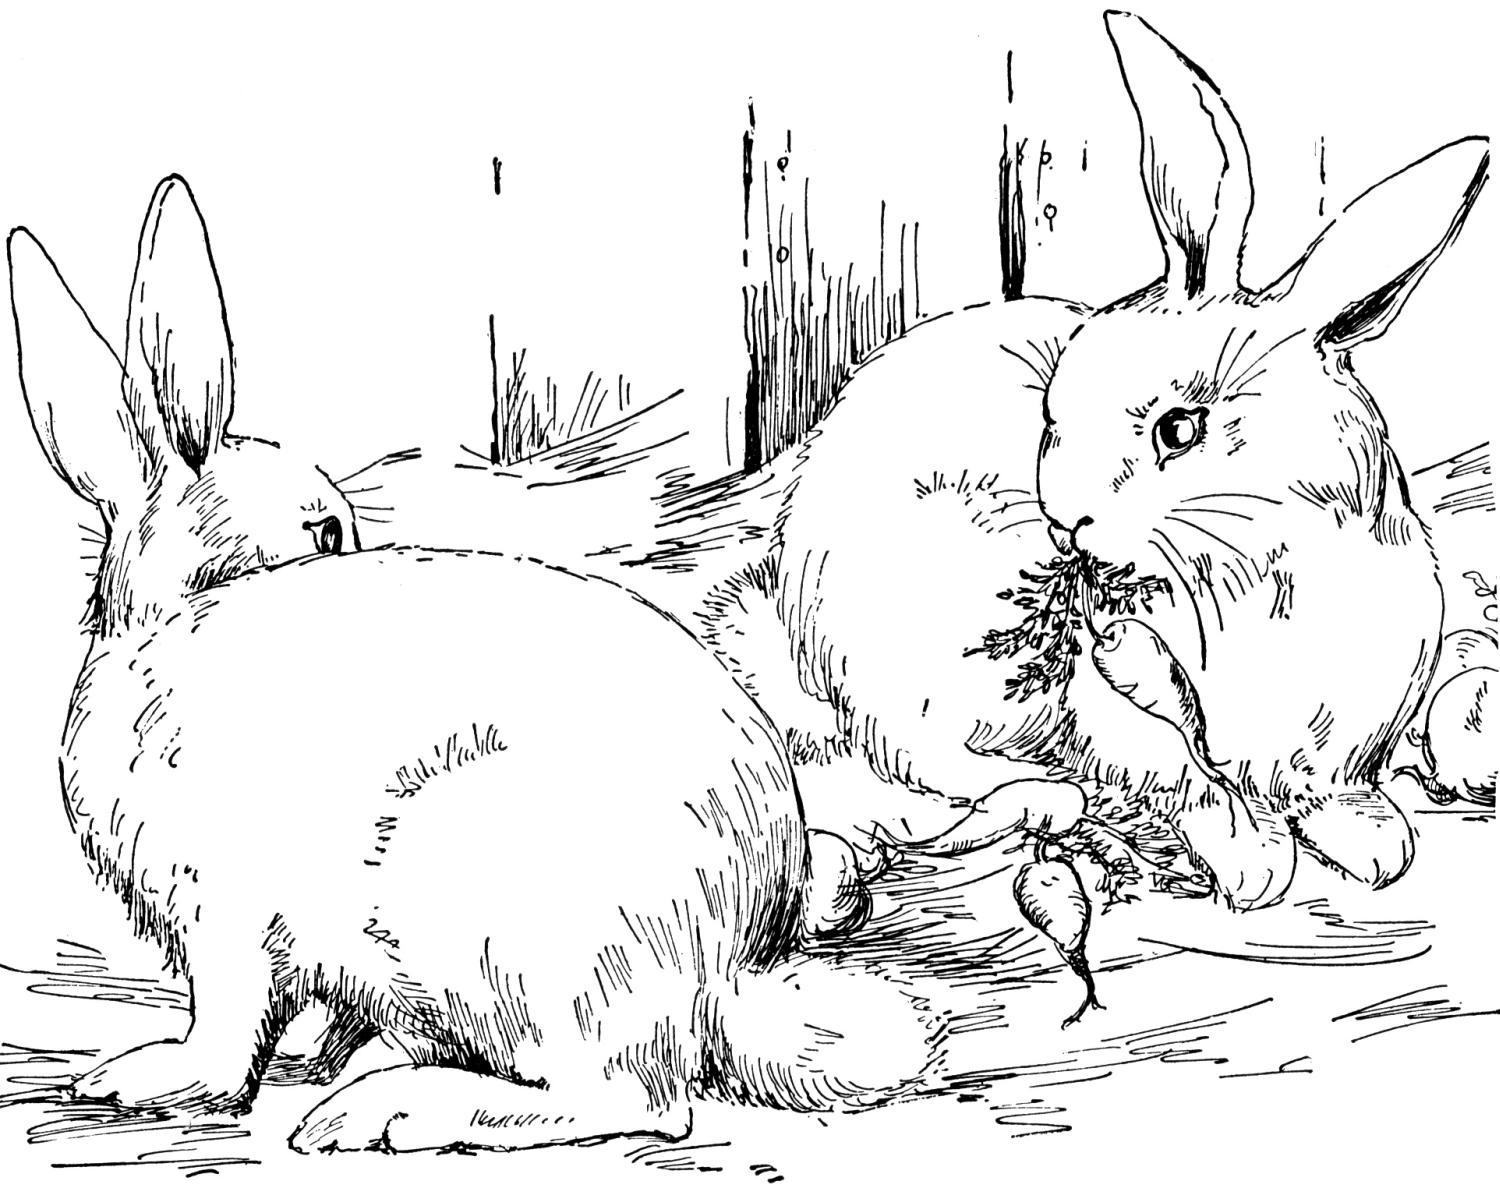 Vẽ thực tế con thỏ đang ôm rau